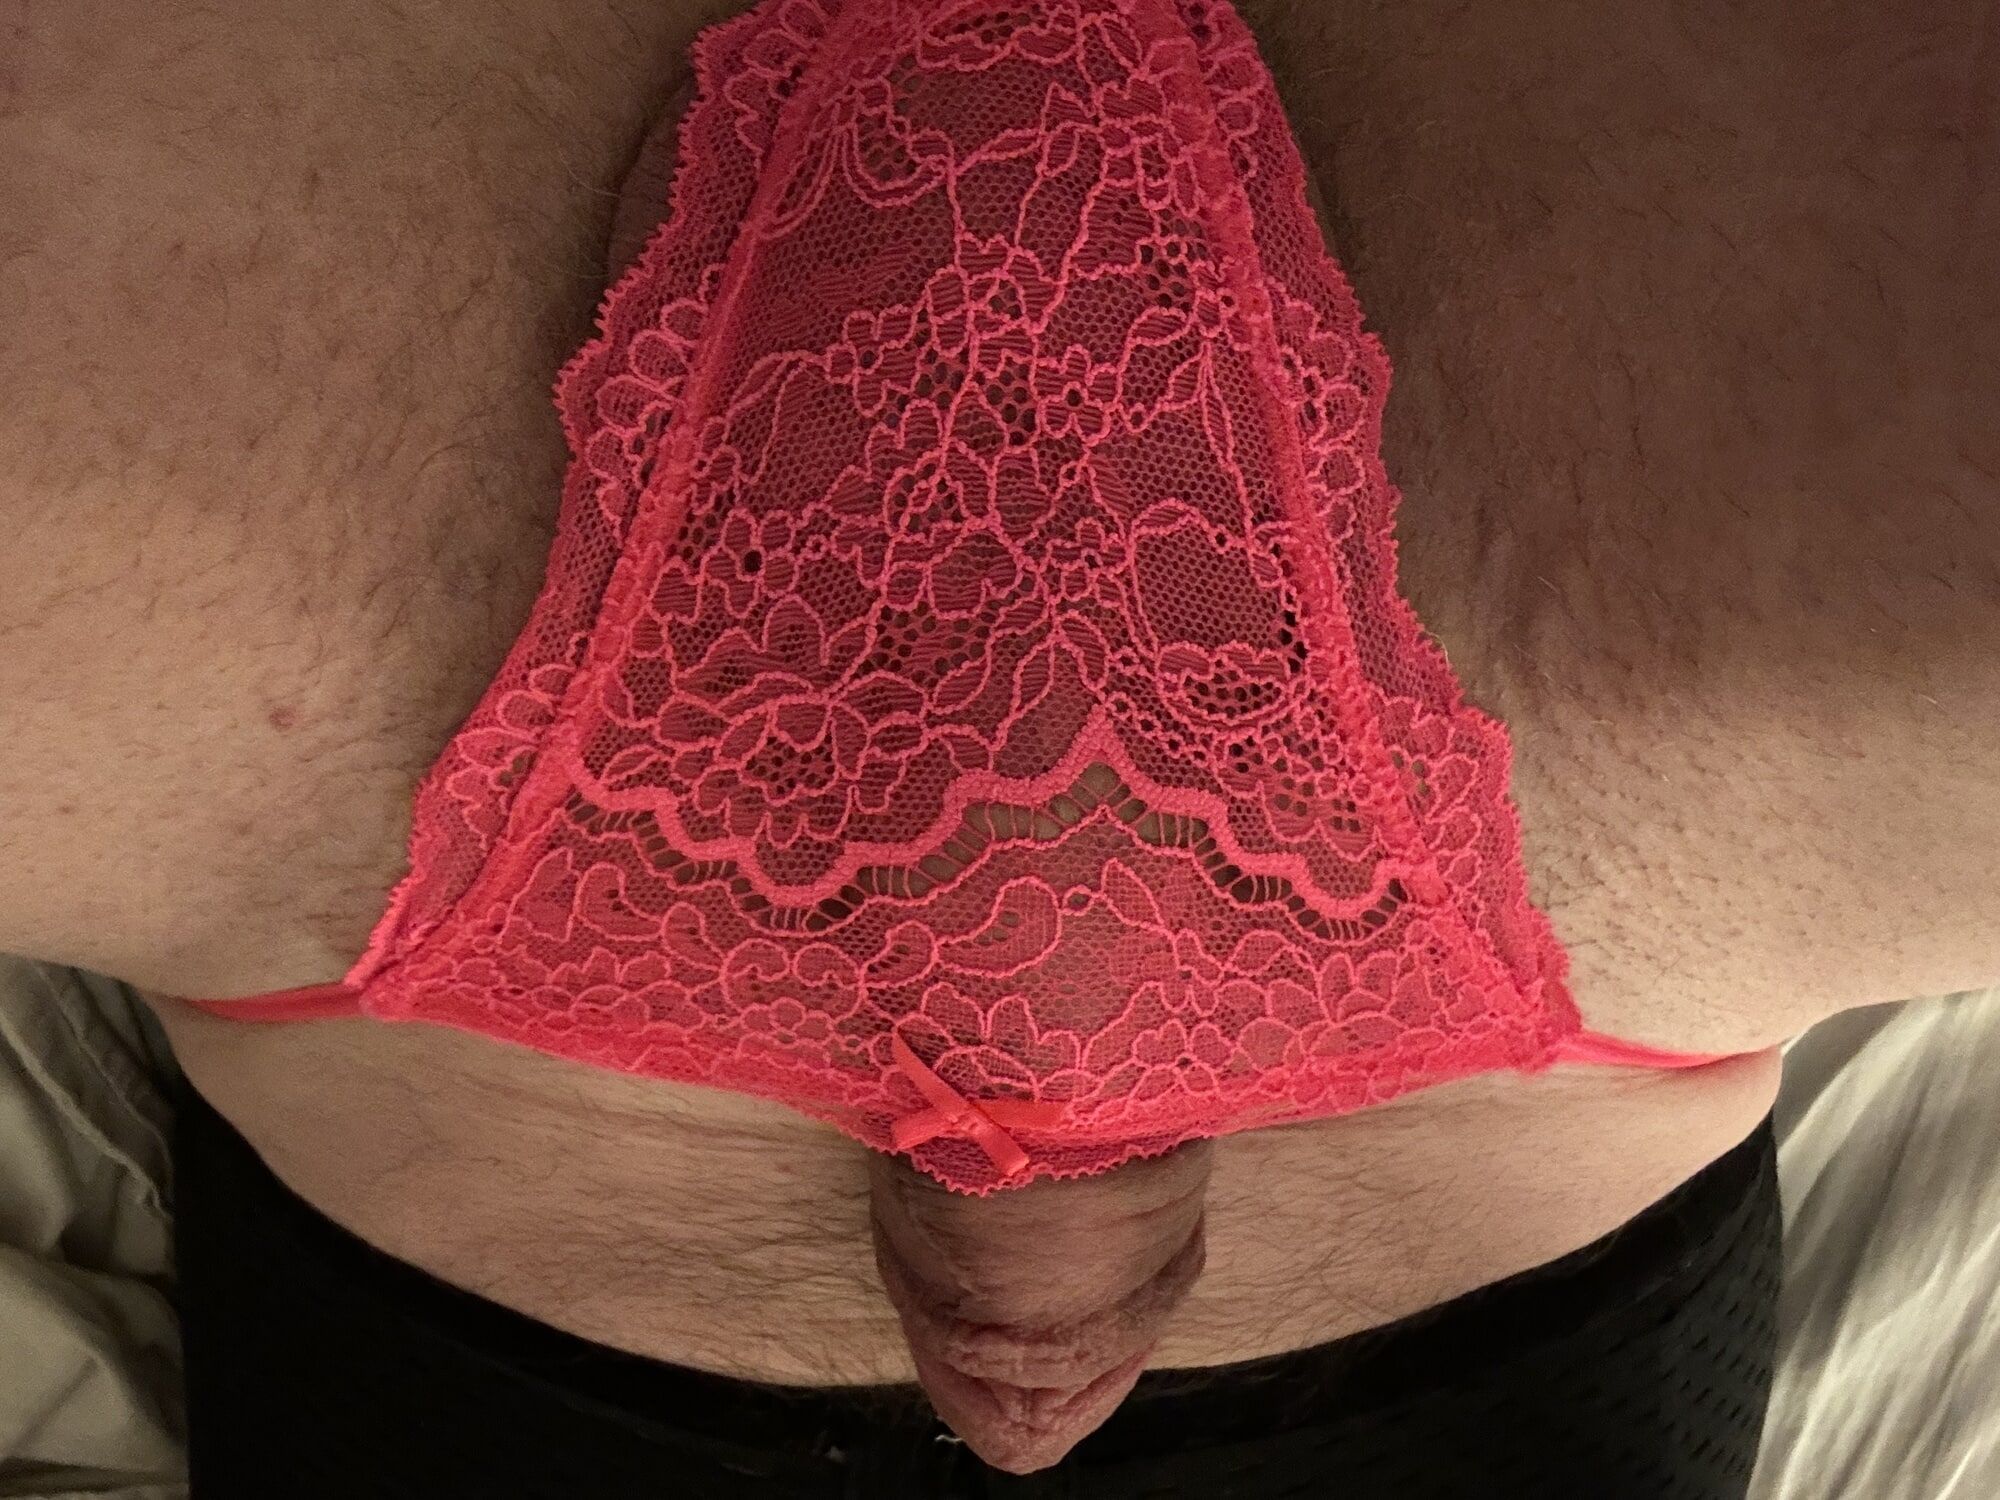 Perfect Penis in Pink Panties #4